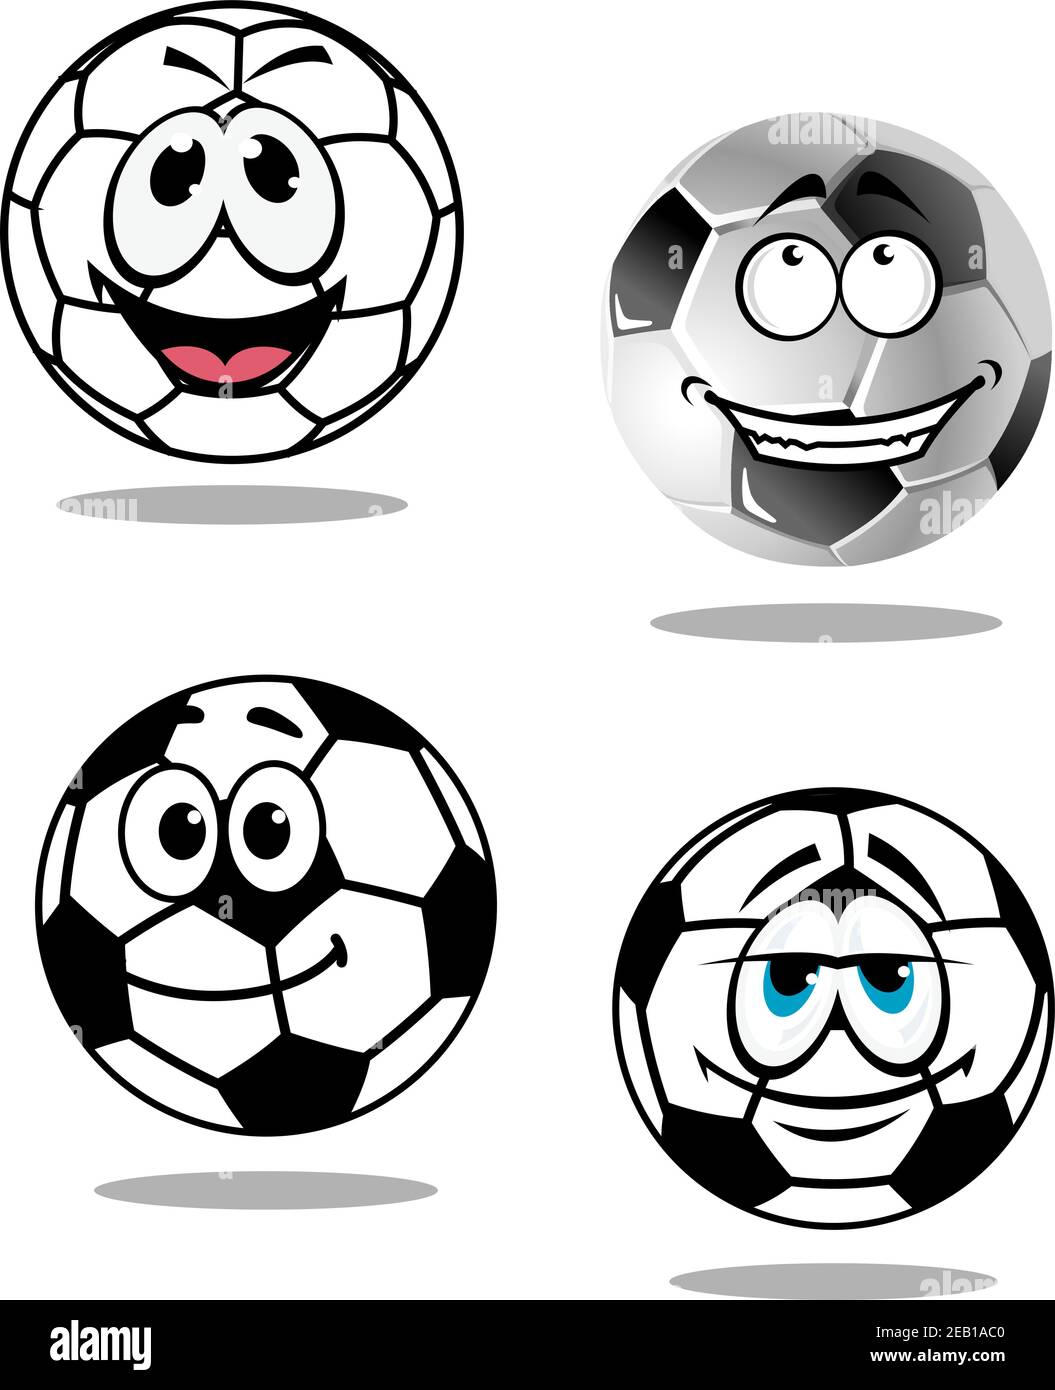 Cartoon calcio o personaggi di calcio con volti sorridenti felici, due con occhi di droopy goofy, isolati su sfondo bianco Illustrazione Vettoriale